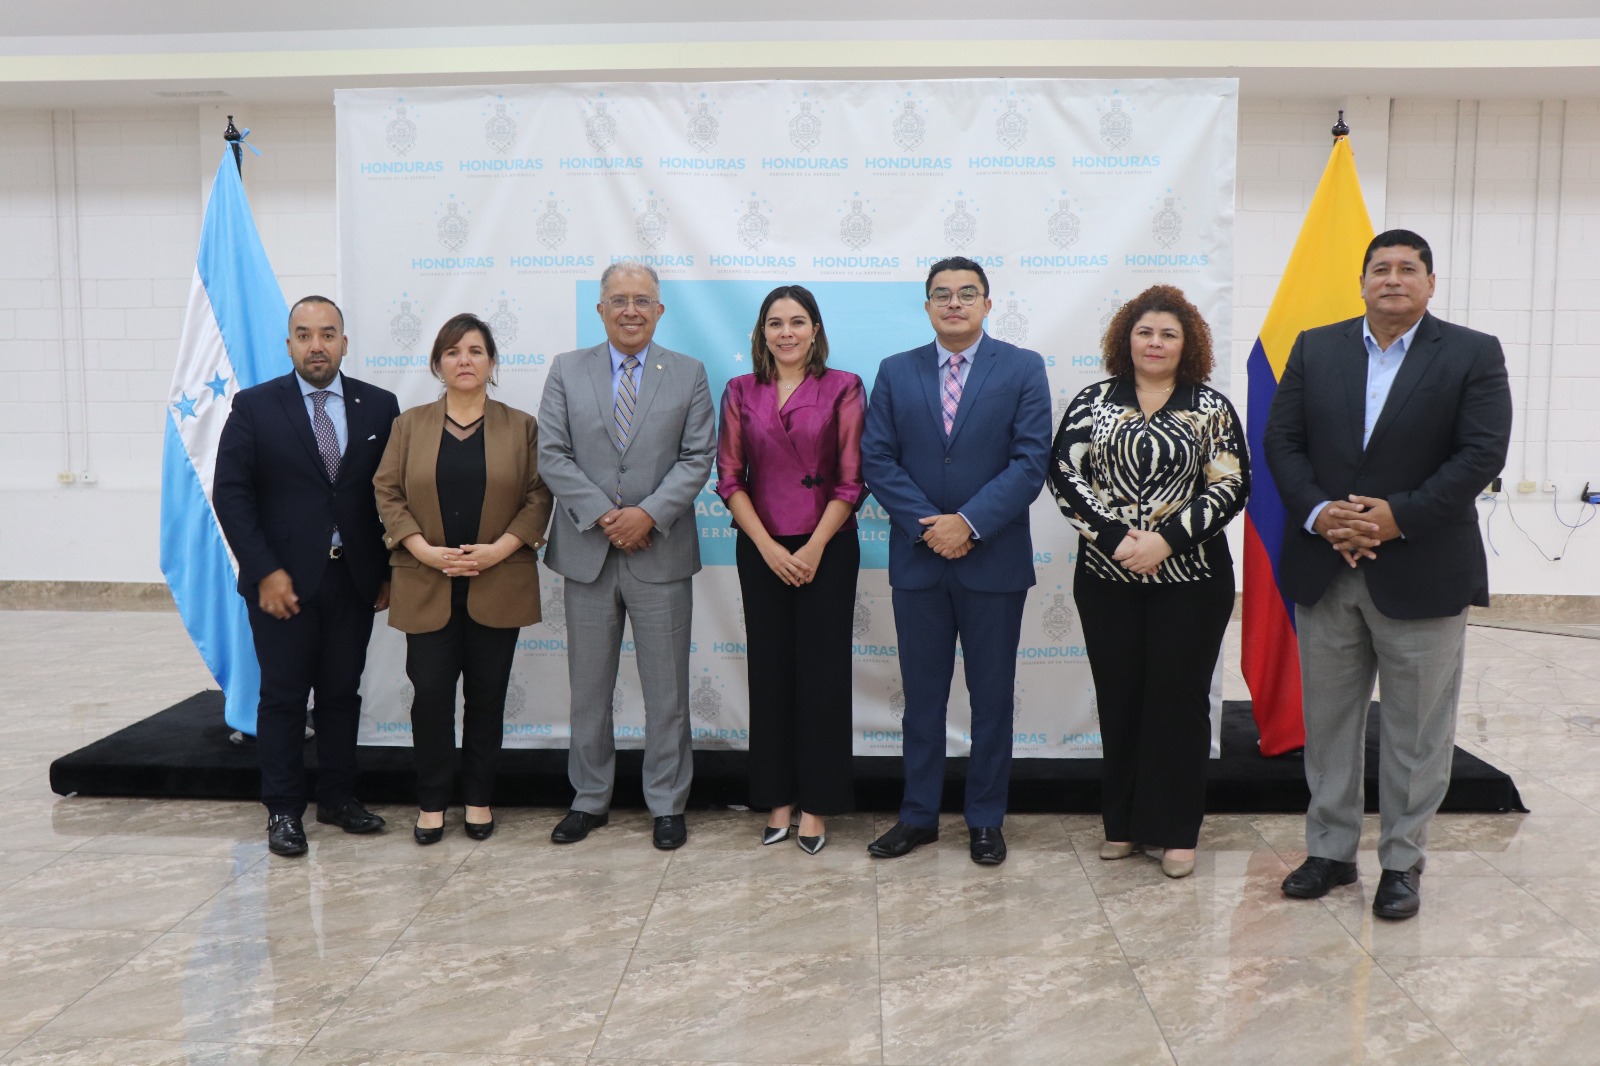 Vicecanciller Francisco Coy presidió la VI reunión del Mecanismo Binacional entre Colombia y Honduras, en Tegucigalpa